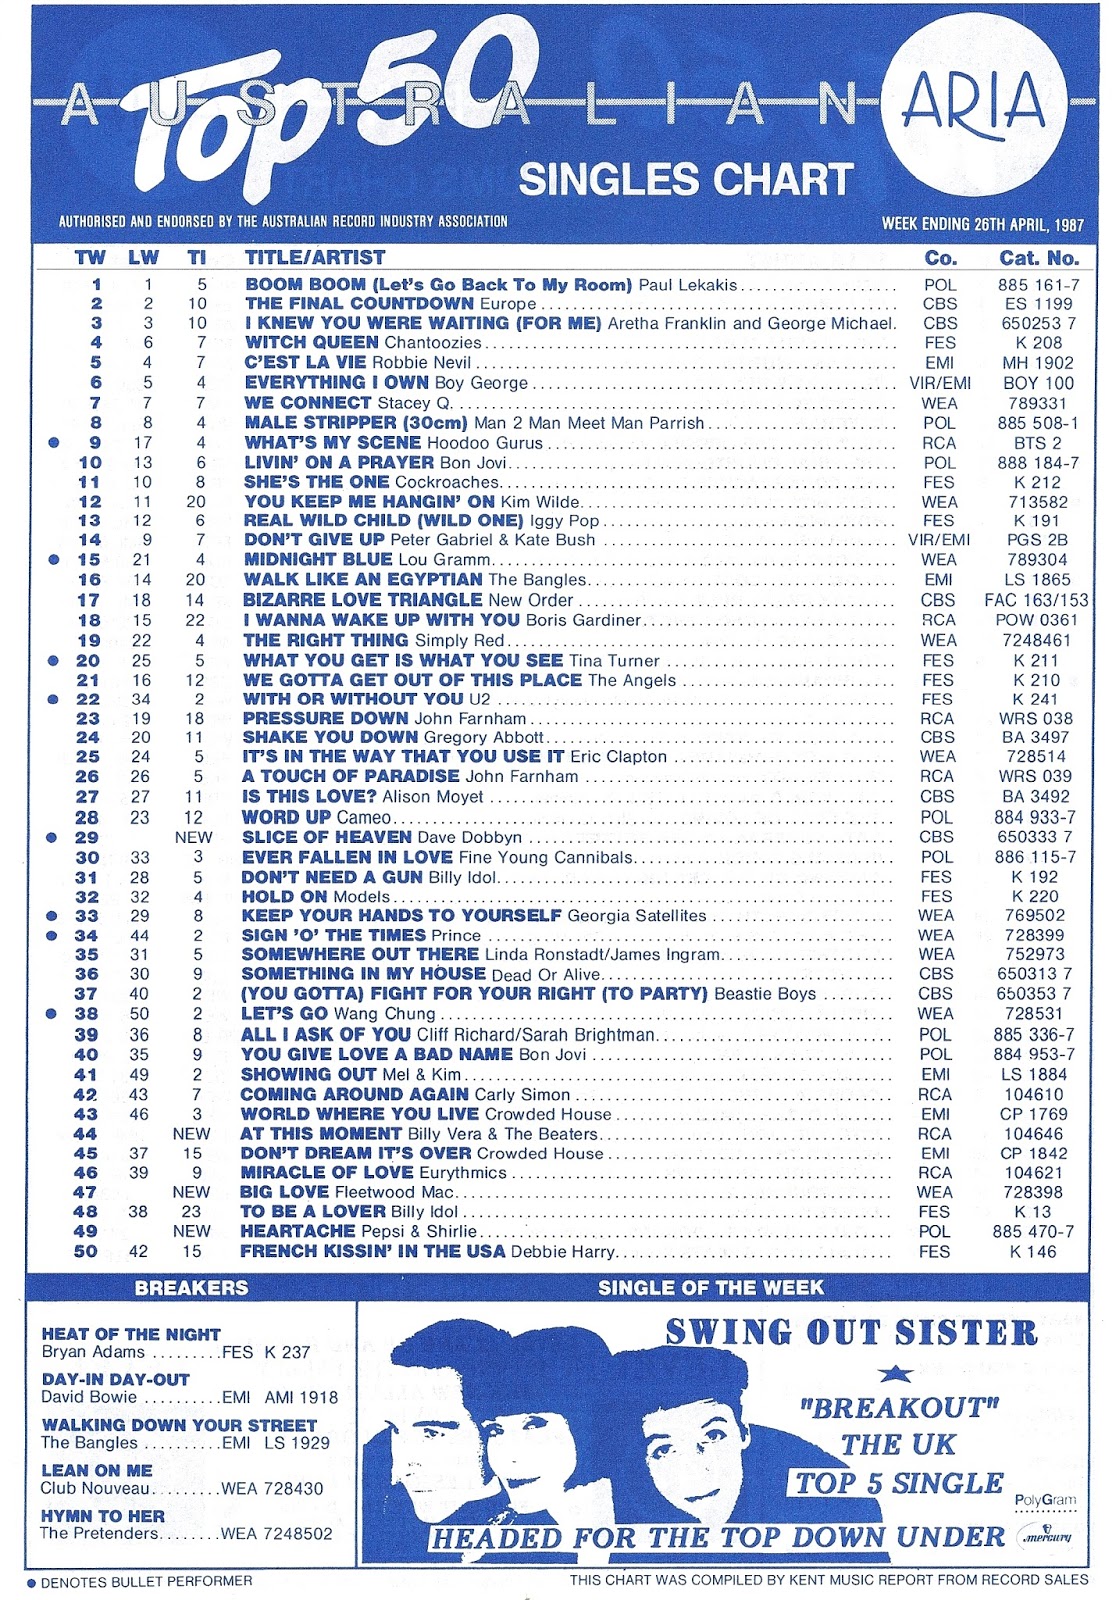 2009 Aria Charts